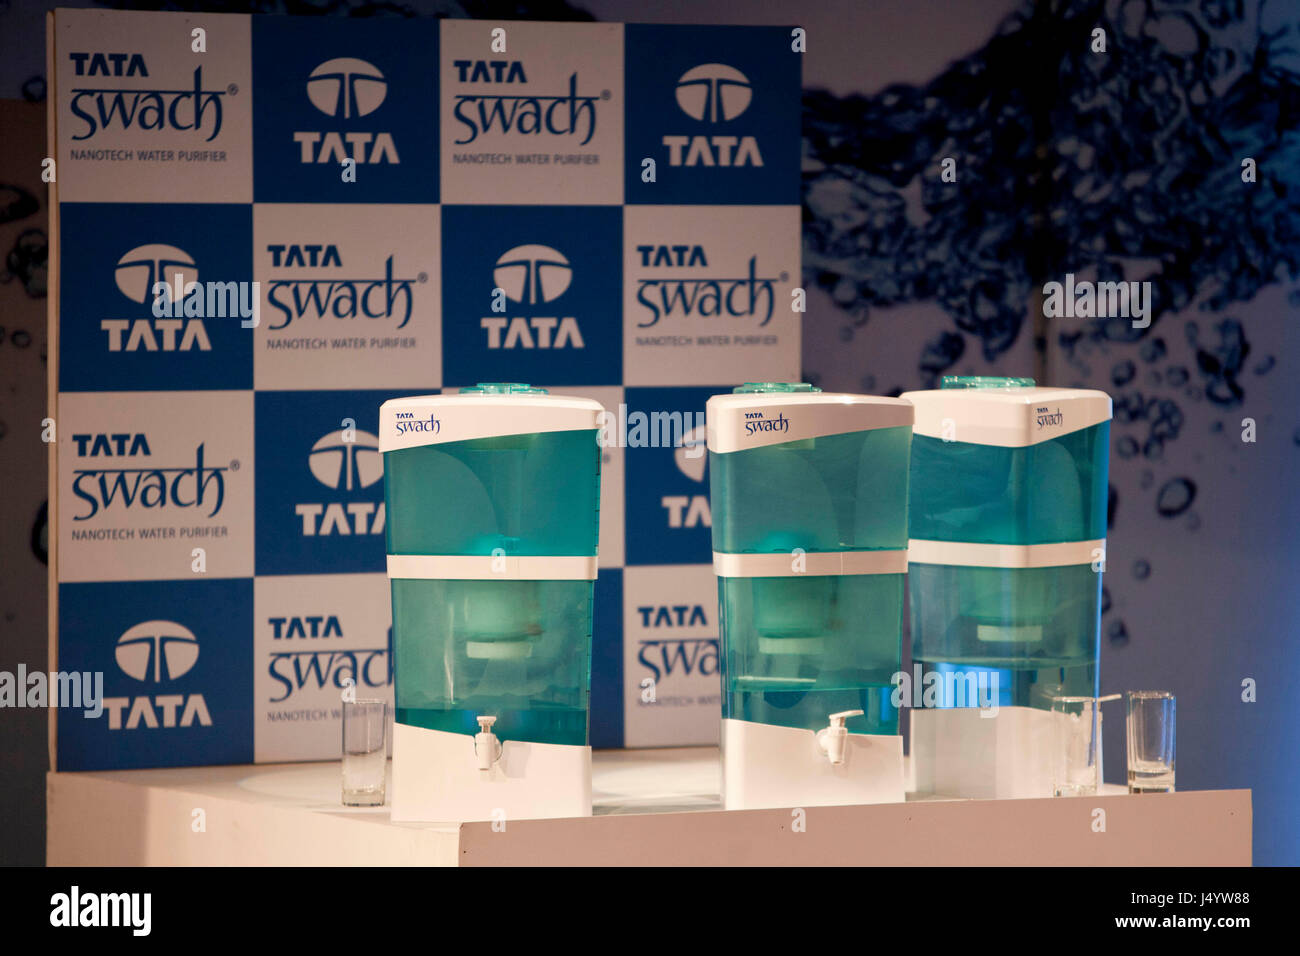 Tata Swach lancement purificateur d'eau, Mumbai, Maharashtra, Inde, Asie Banque D'Images